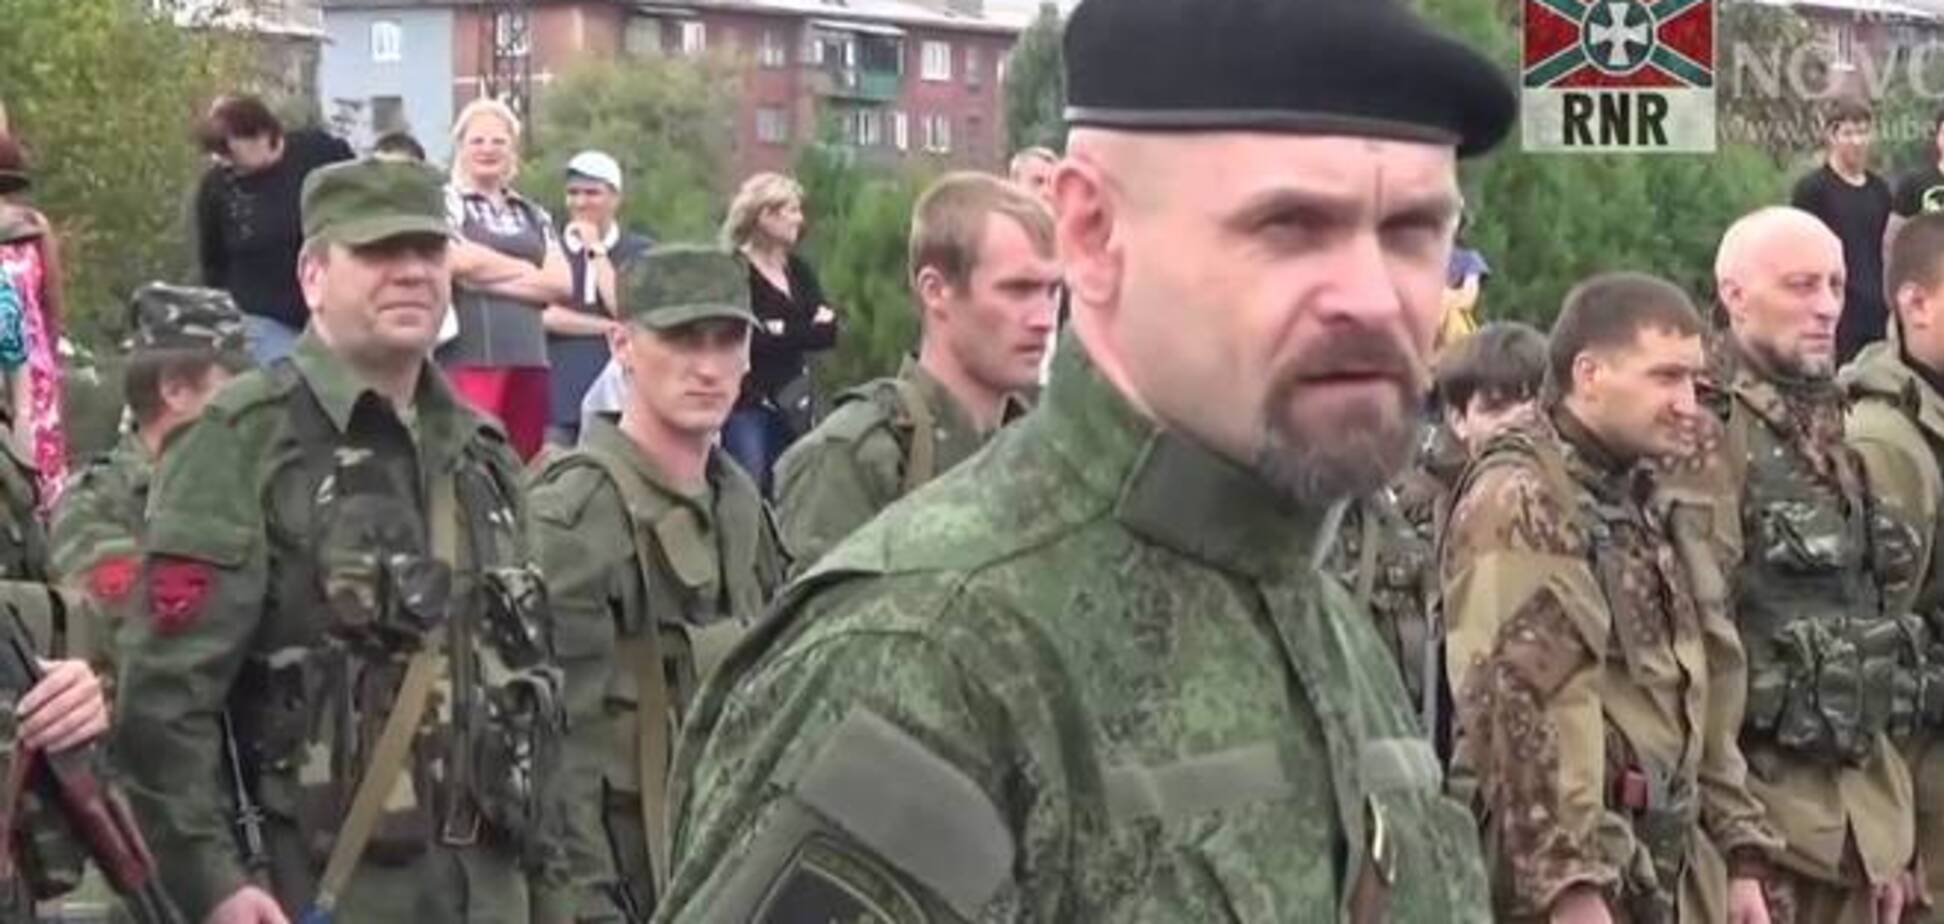 Луганський терорист Мозговий визнав у вбивцях московських поліцейських своїх 'привидів'